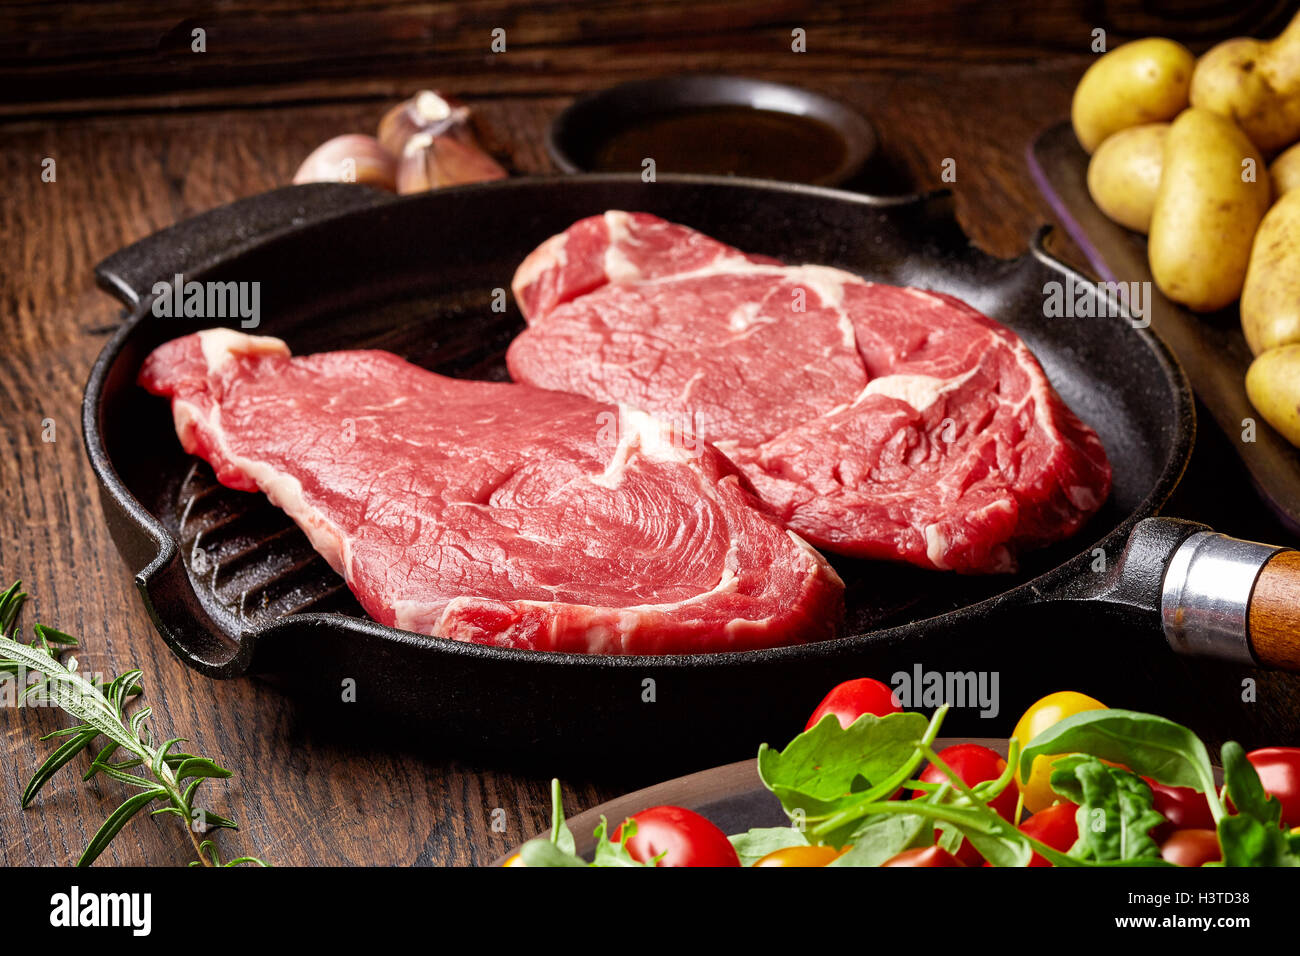 Steak de boeuf cru sur gril, pommes de terre, les épices et les tomates de table en bois Banque D'Images